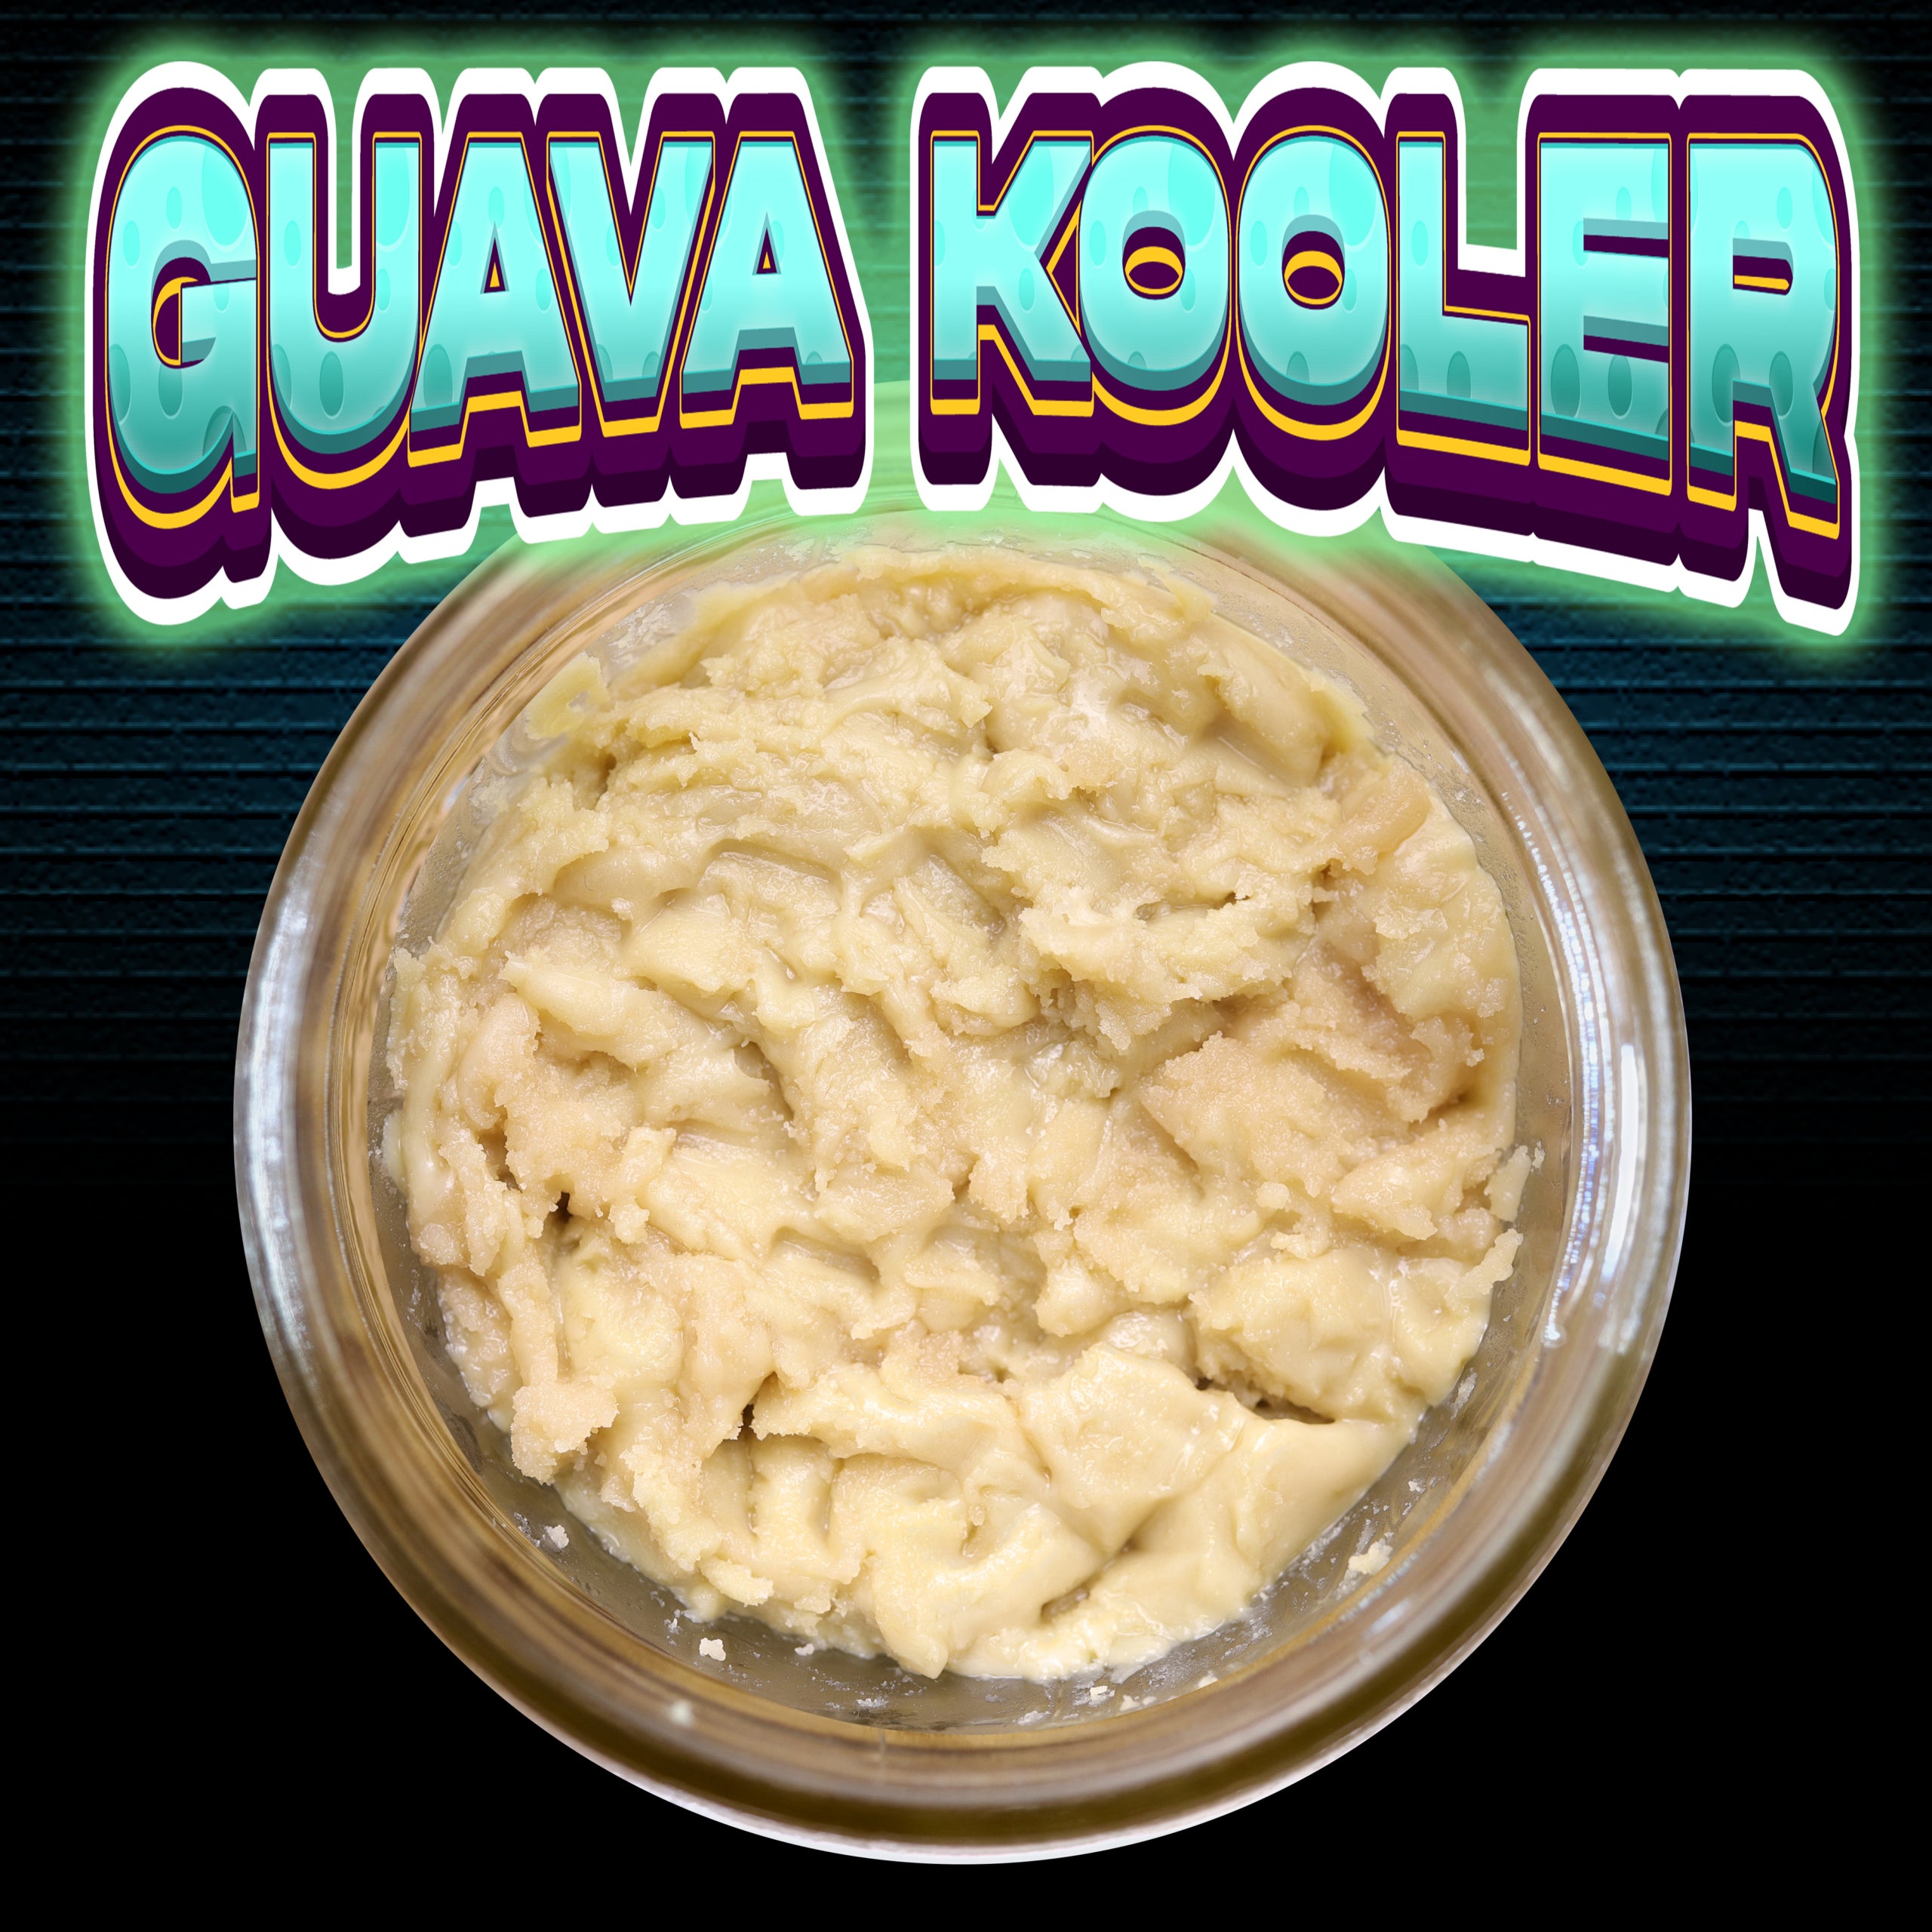 guava kooler (1)